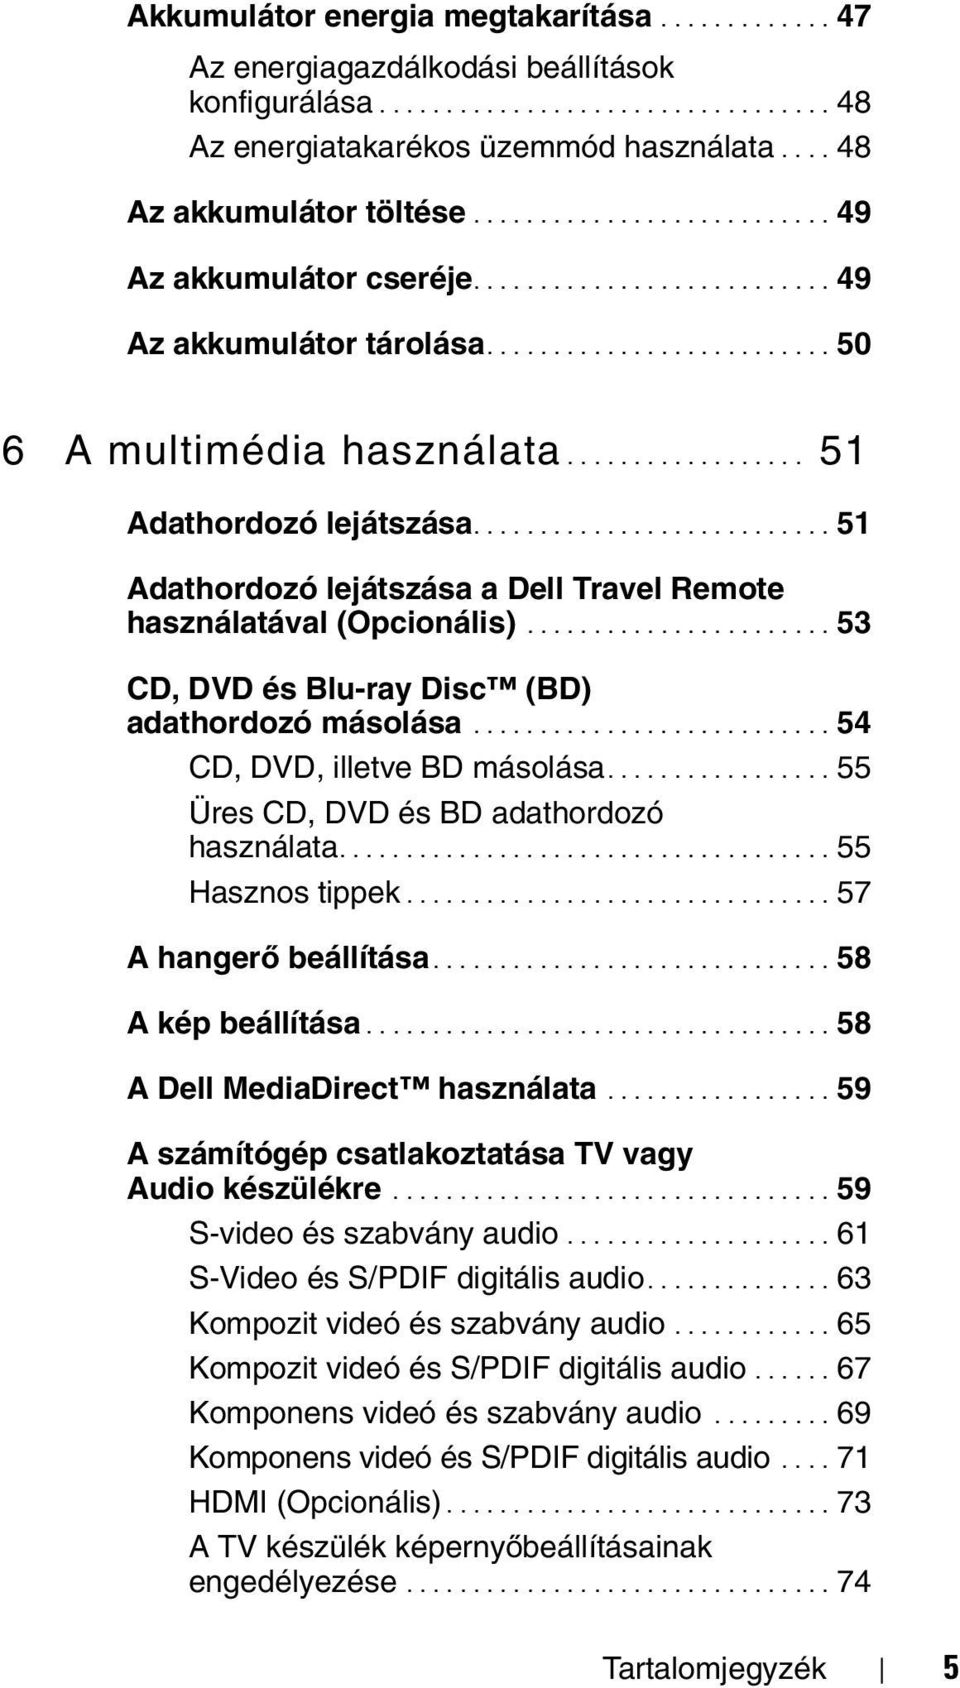 ................. 51 Adathordozó lejátszása........................... 51 Adathordozó lejátszása a Dell Travel Remote használatával (Opcionális)....................... 53 CD, DVD és Blu-ray Disc (BD) adathordozó másolása.